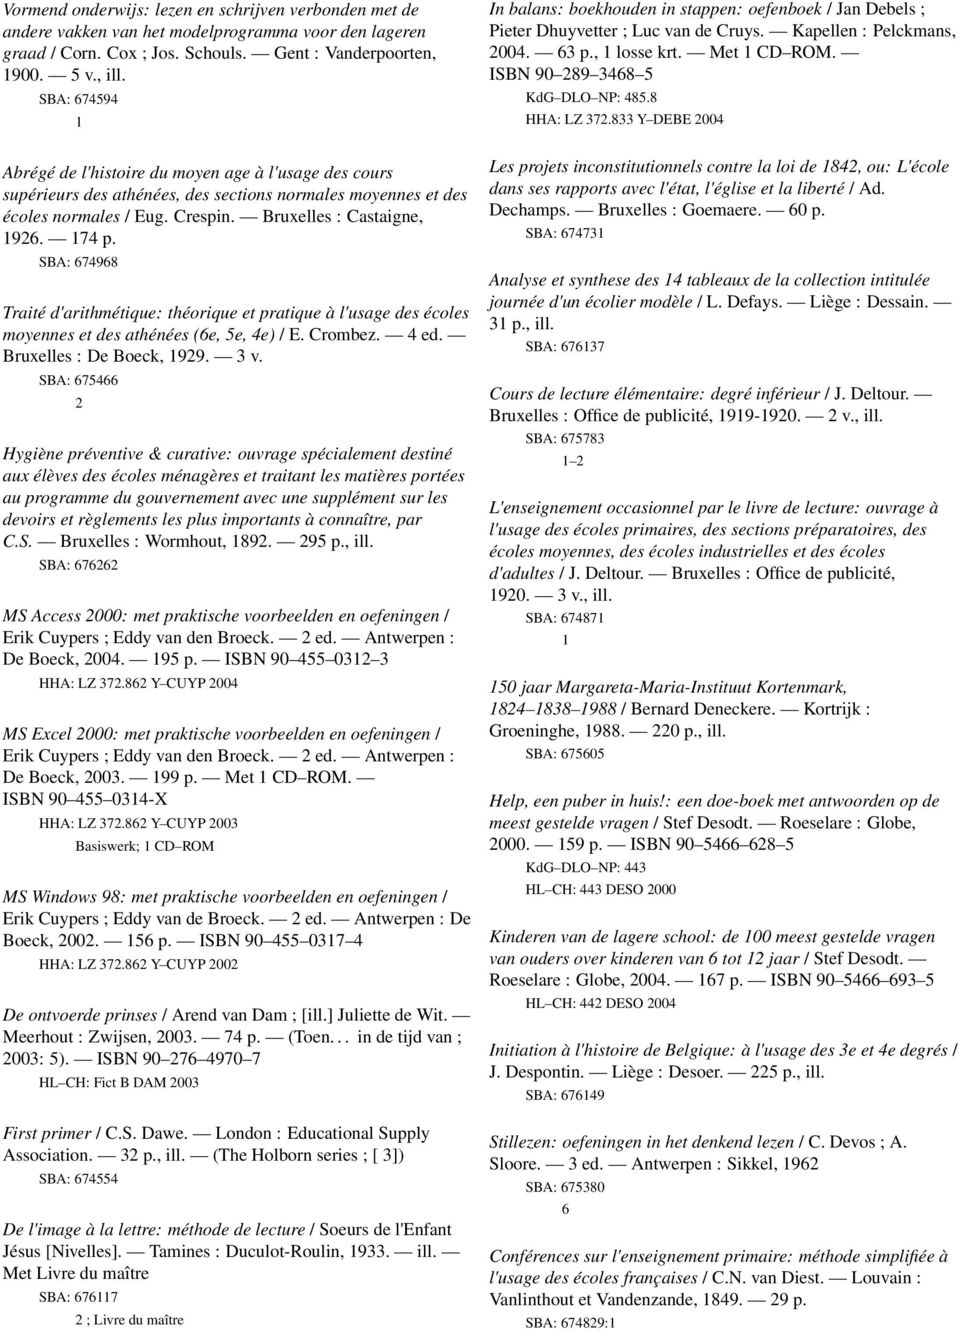 SBA: 674968 Traité d'arithmétique: théorique et pratique à l'usage des écoles moyennes et des athénées (6e, 5e, 4e) / E. Crombez. 4 ed. Bruxelles : De Boeck, 99. 3 v.